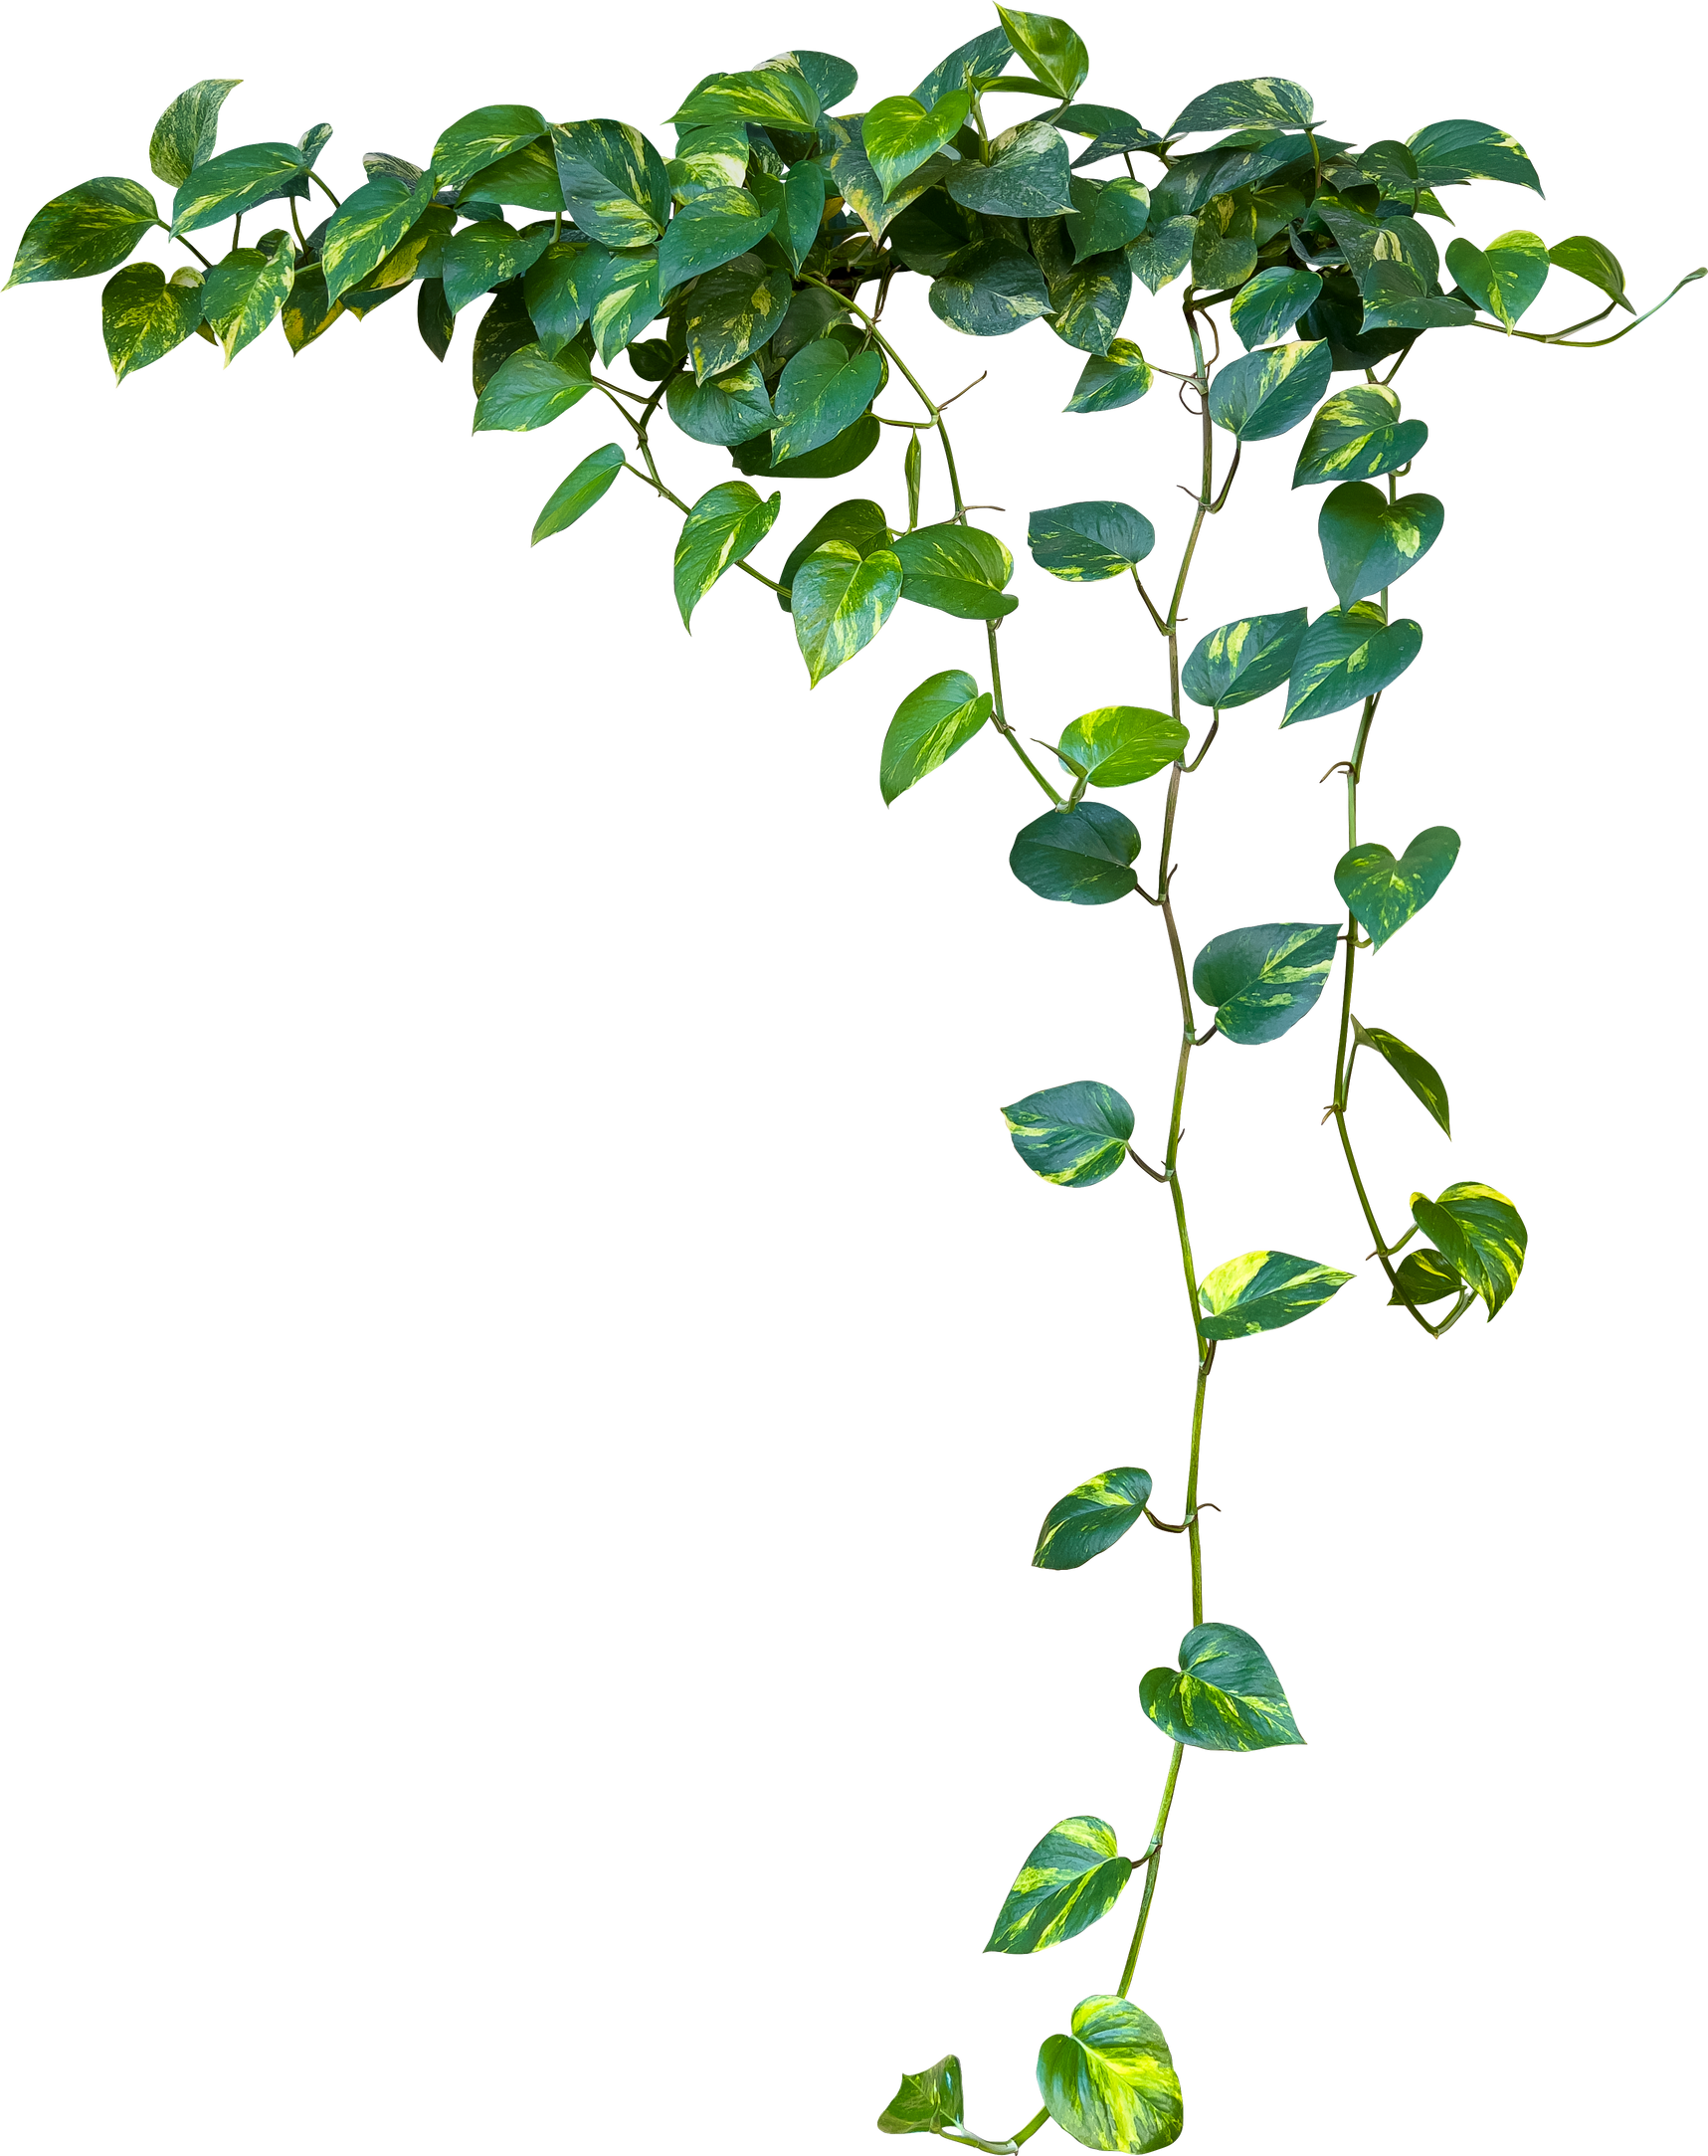 Heart shaped green variegated leaves hanging vine plant bush of devil's ivy or golden pothos houseplant